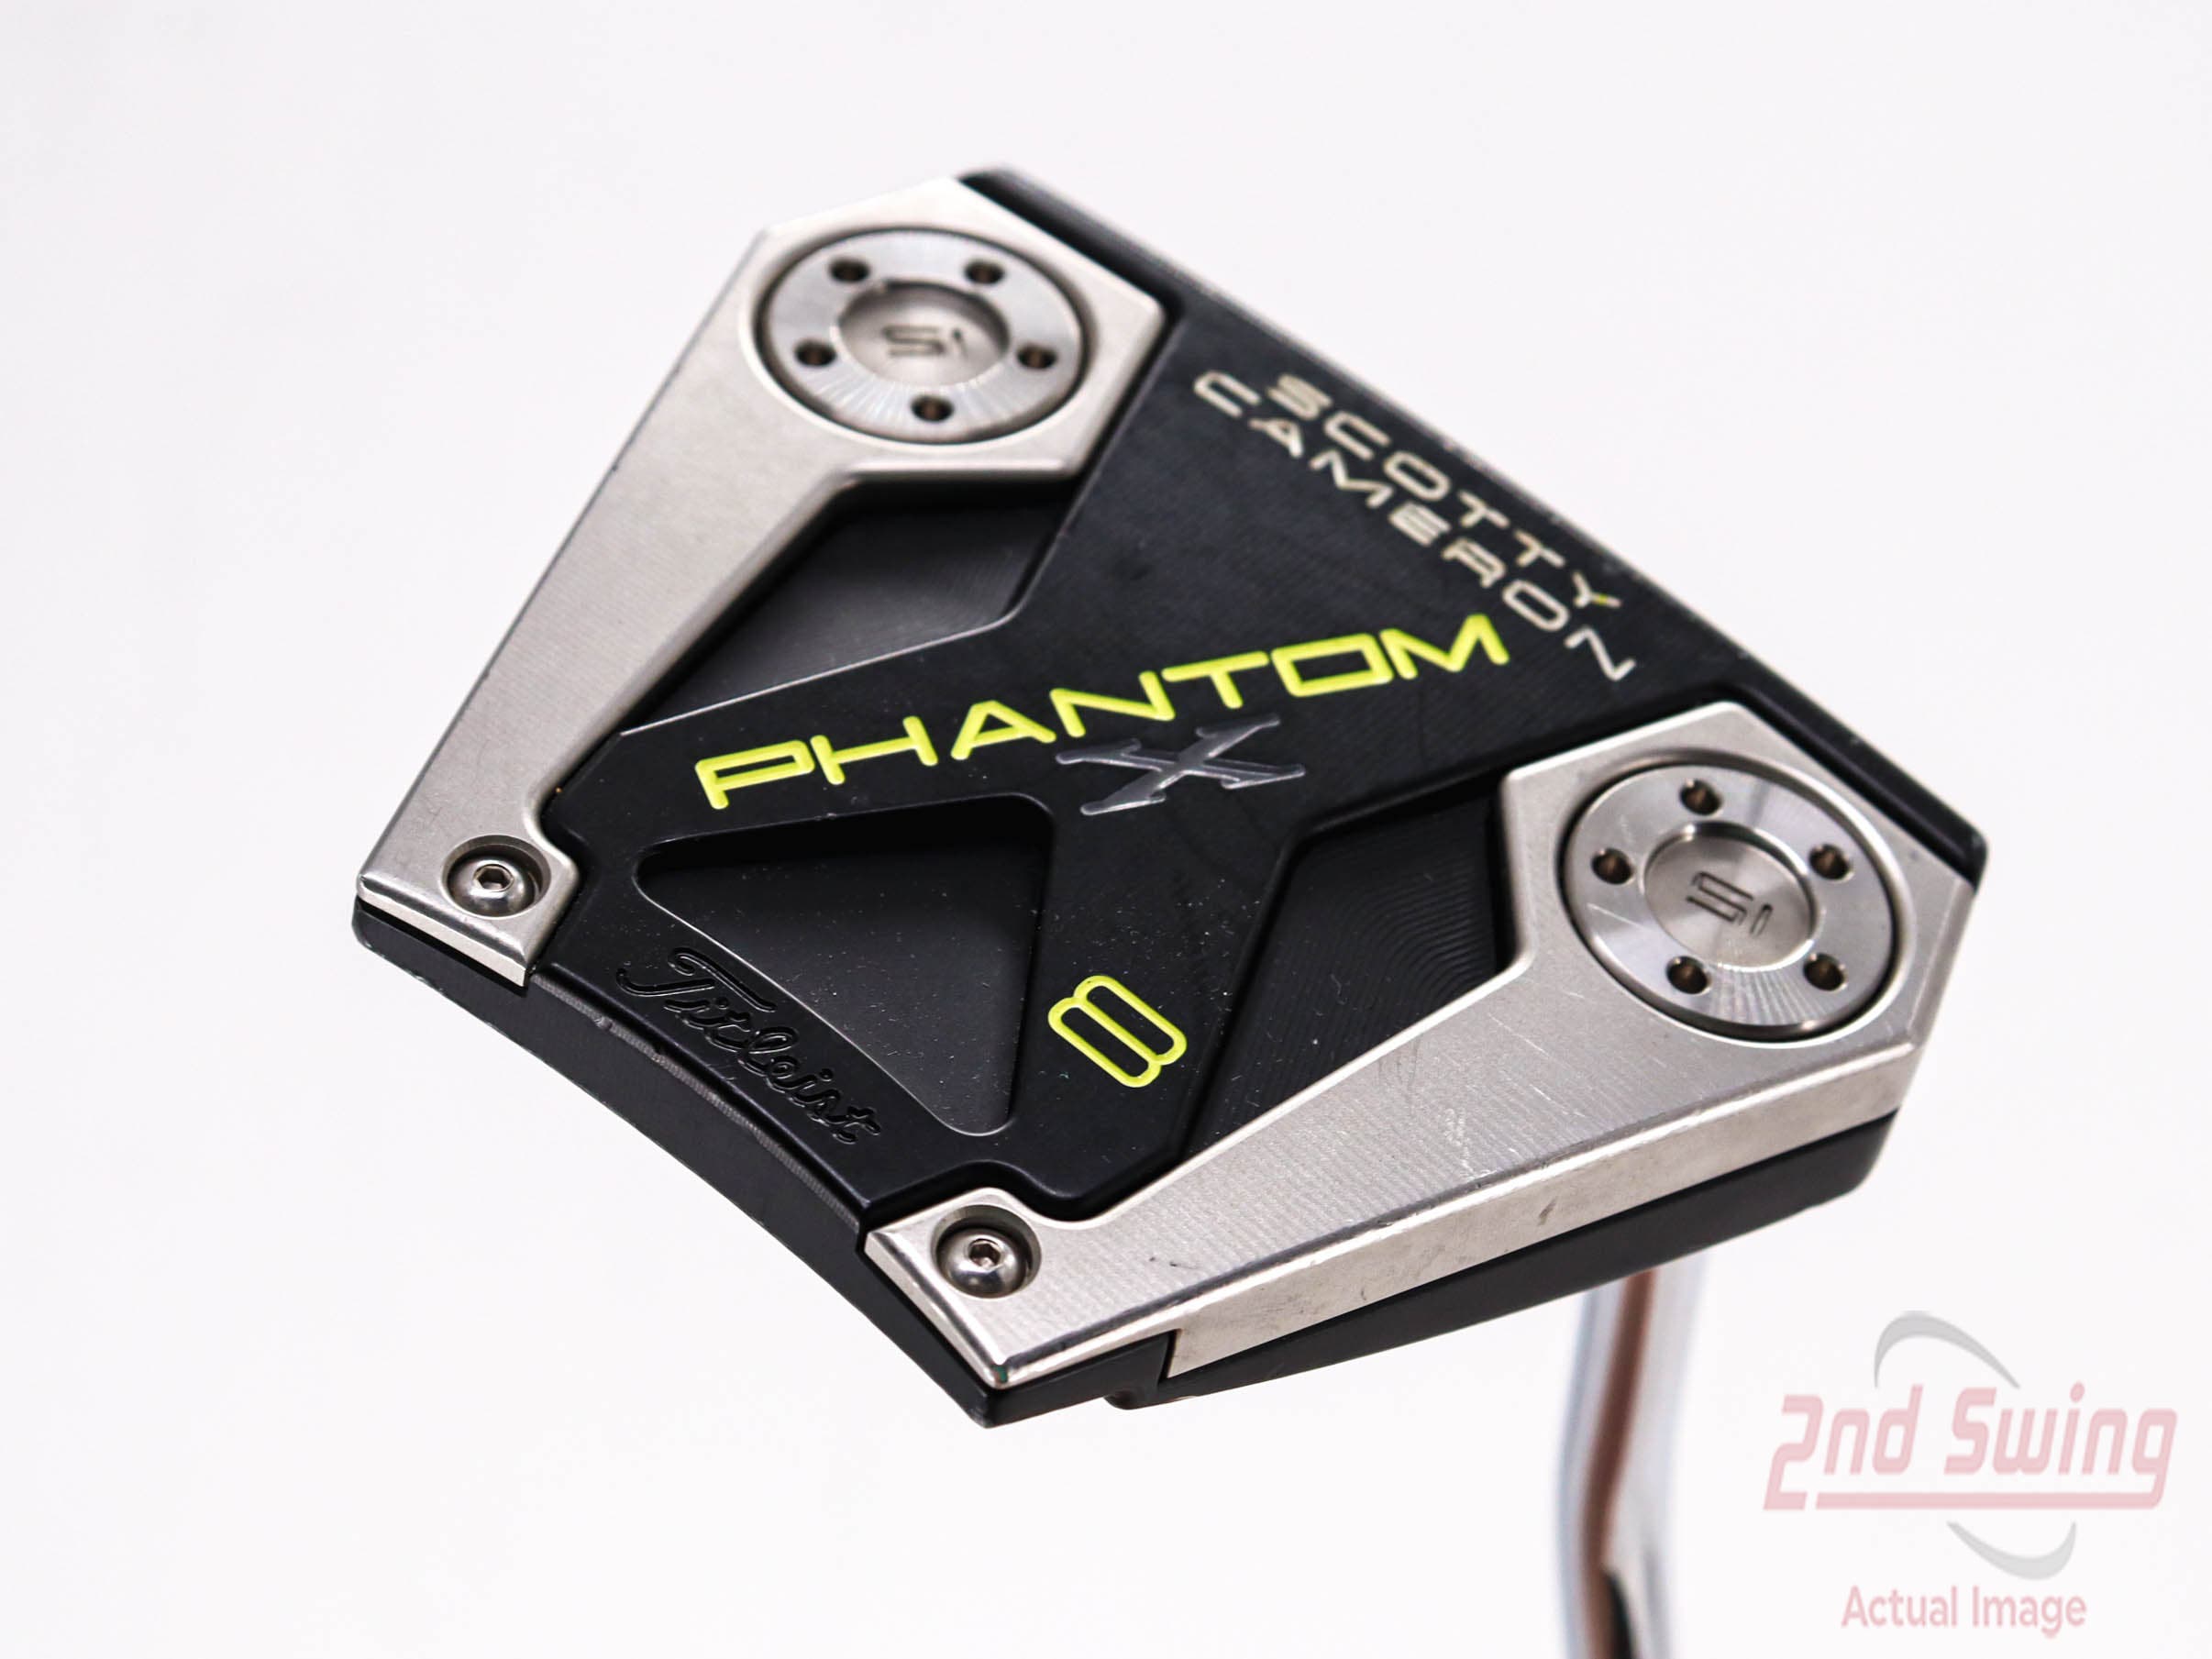 Titleist Scotty Cameron Phantom X 8 Putter | 2nd Swing Golf